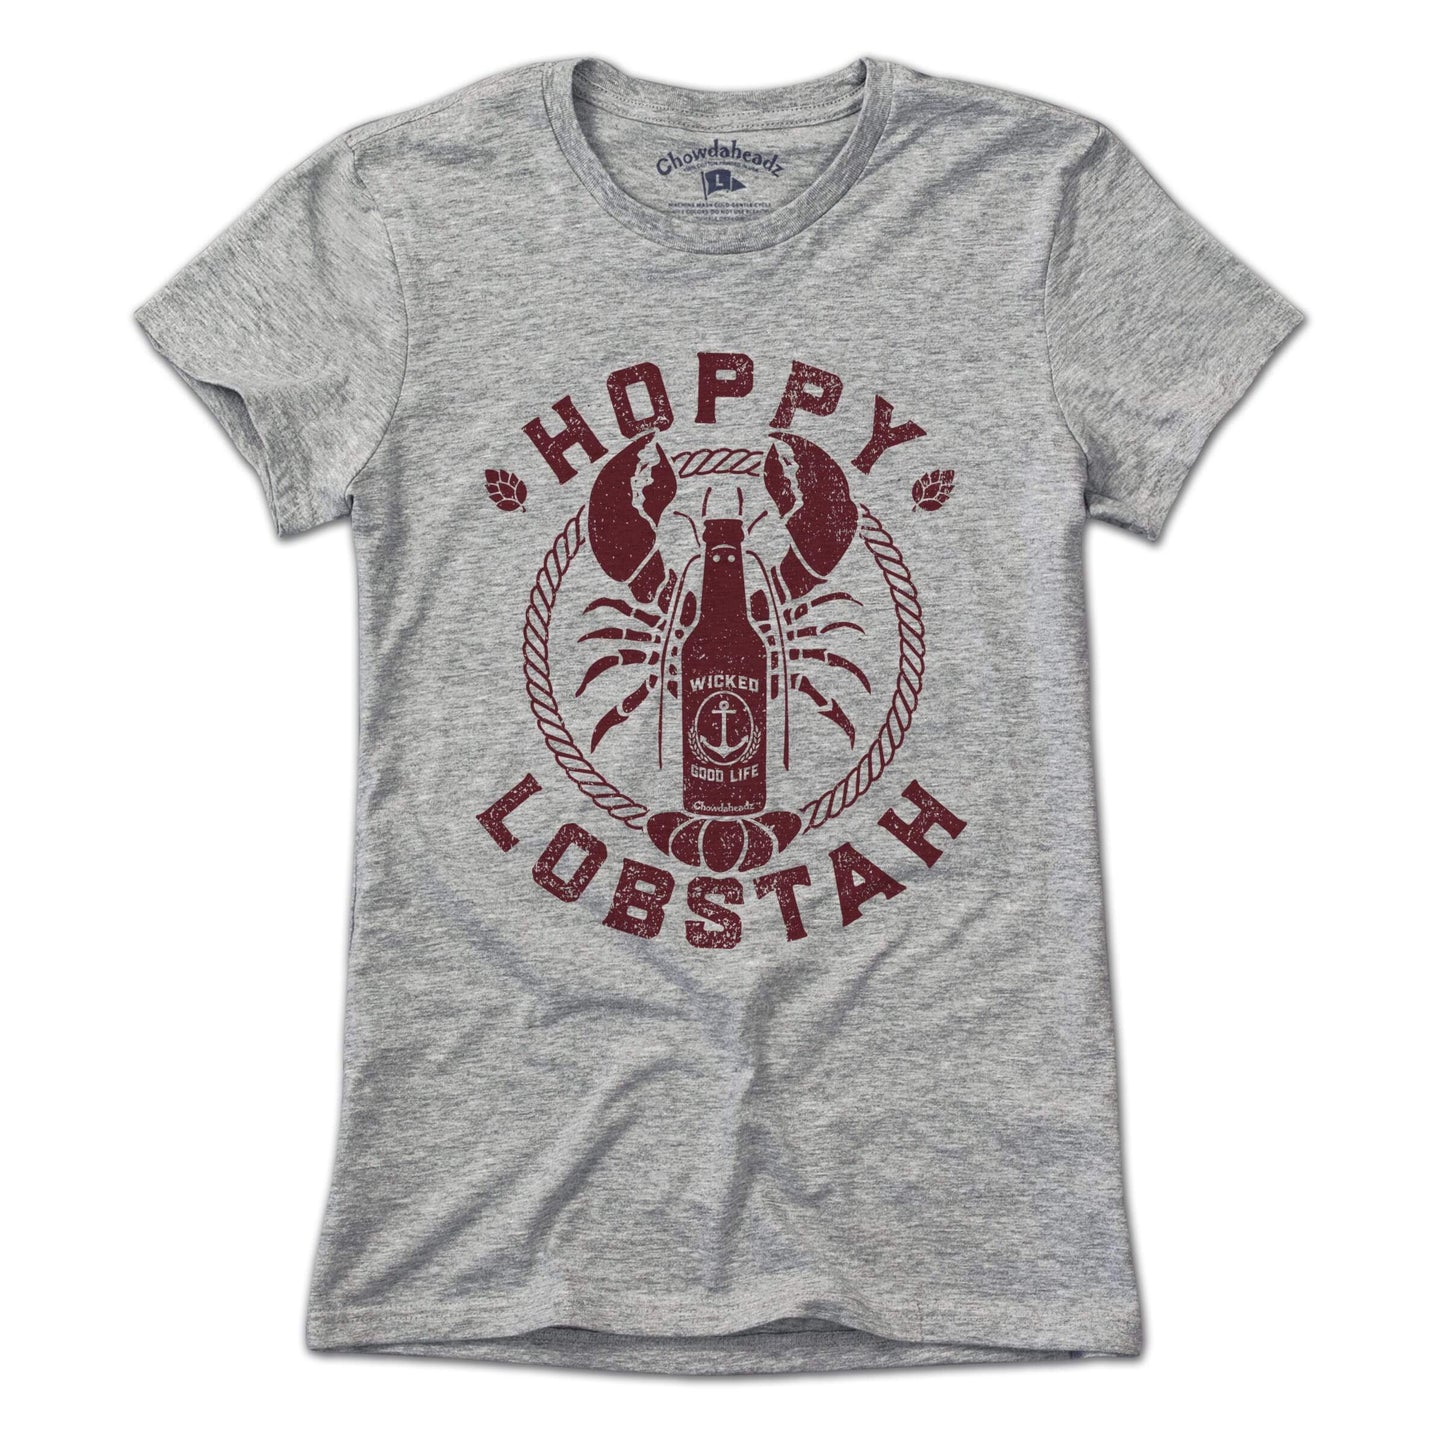 Hoppy Lobstah T-Shirt - Chowdaheadz